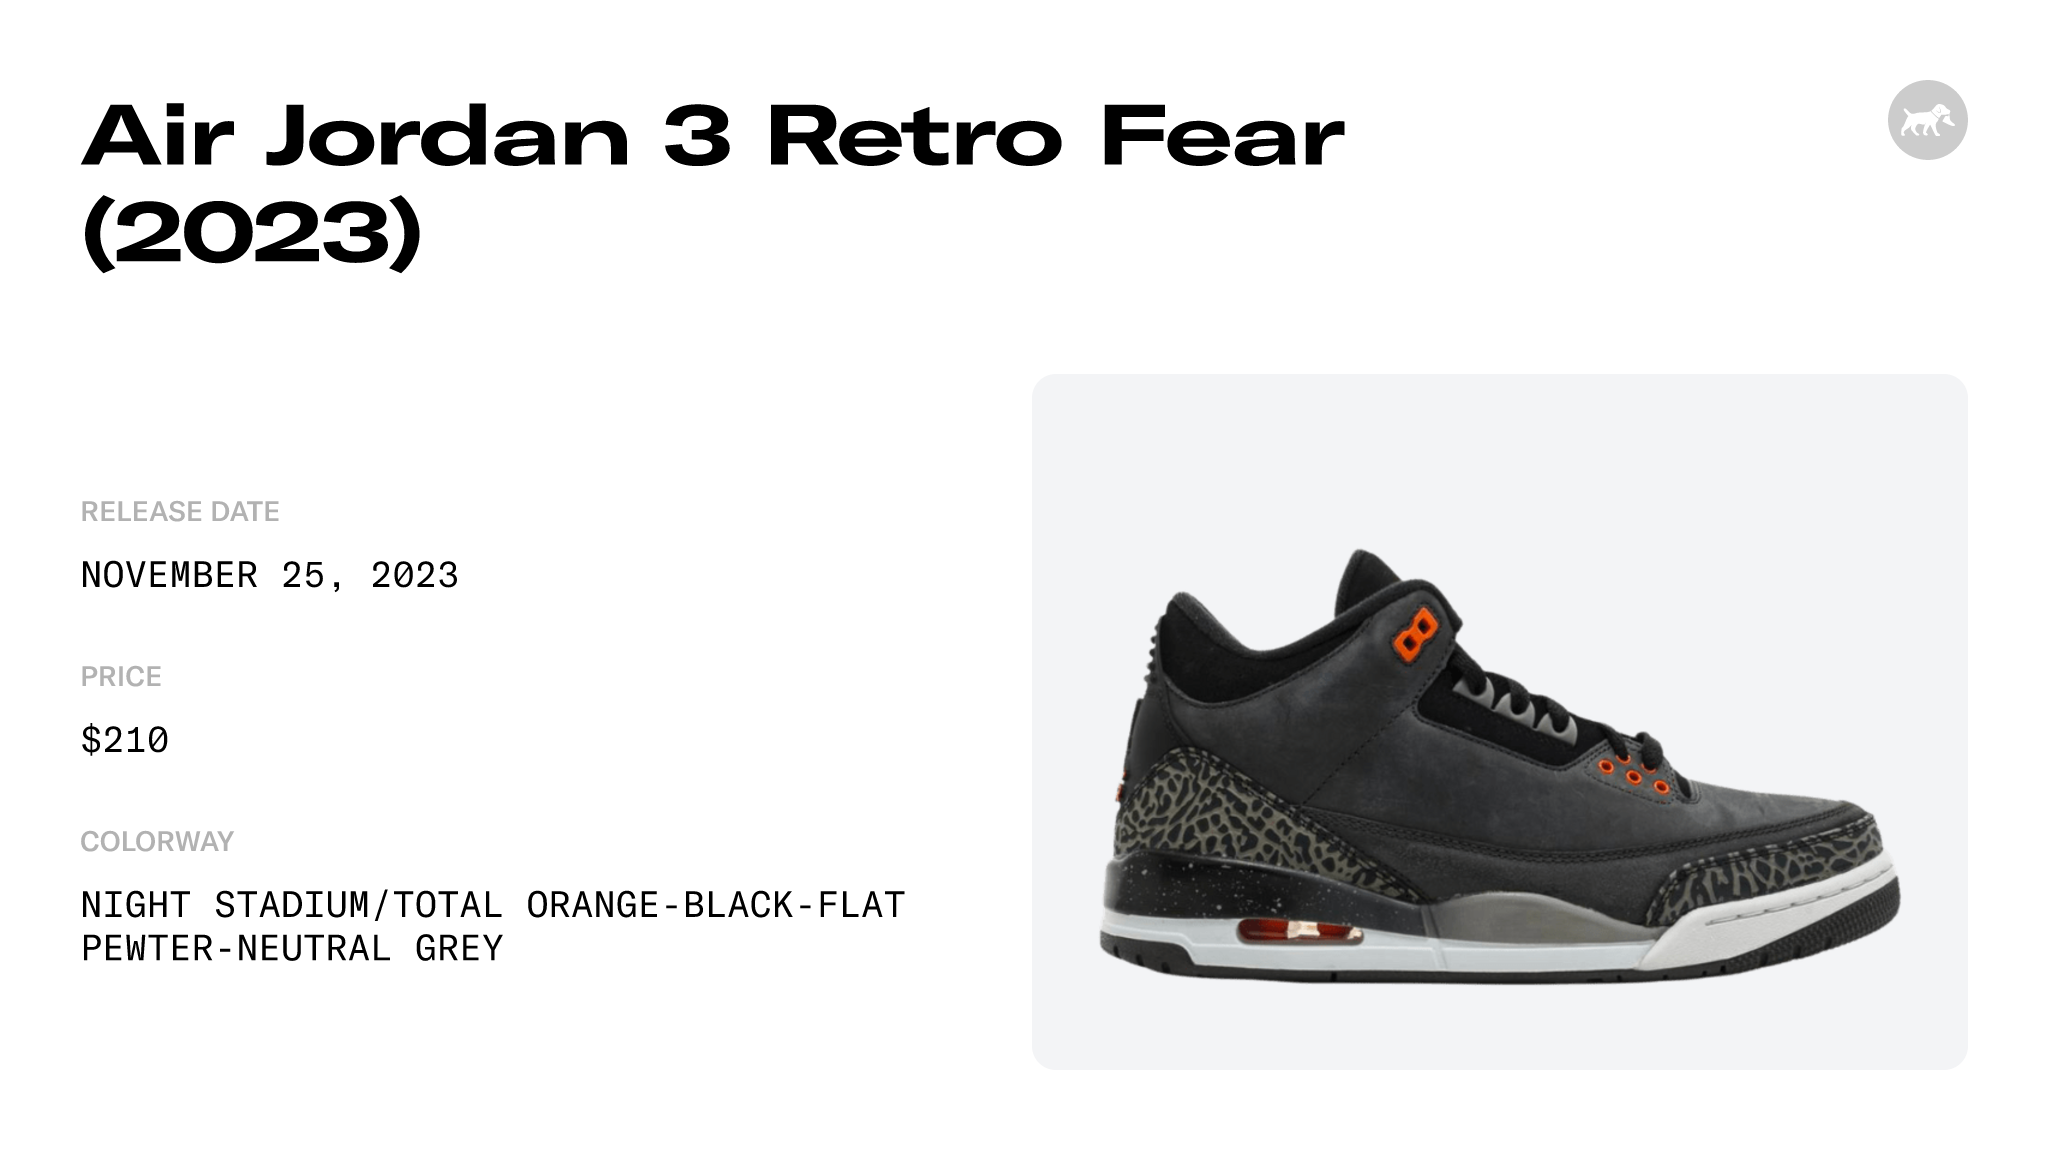 Air Jordan 3 Fear CT8532-080